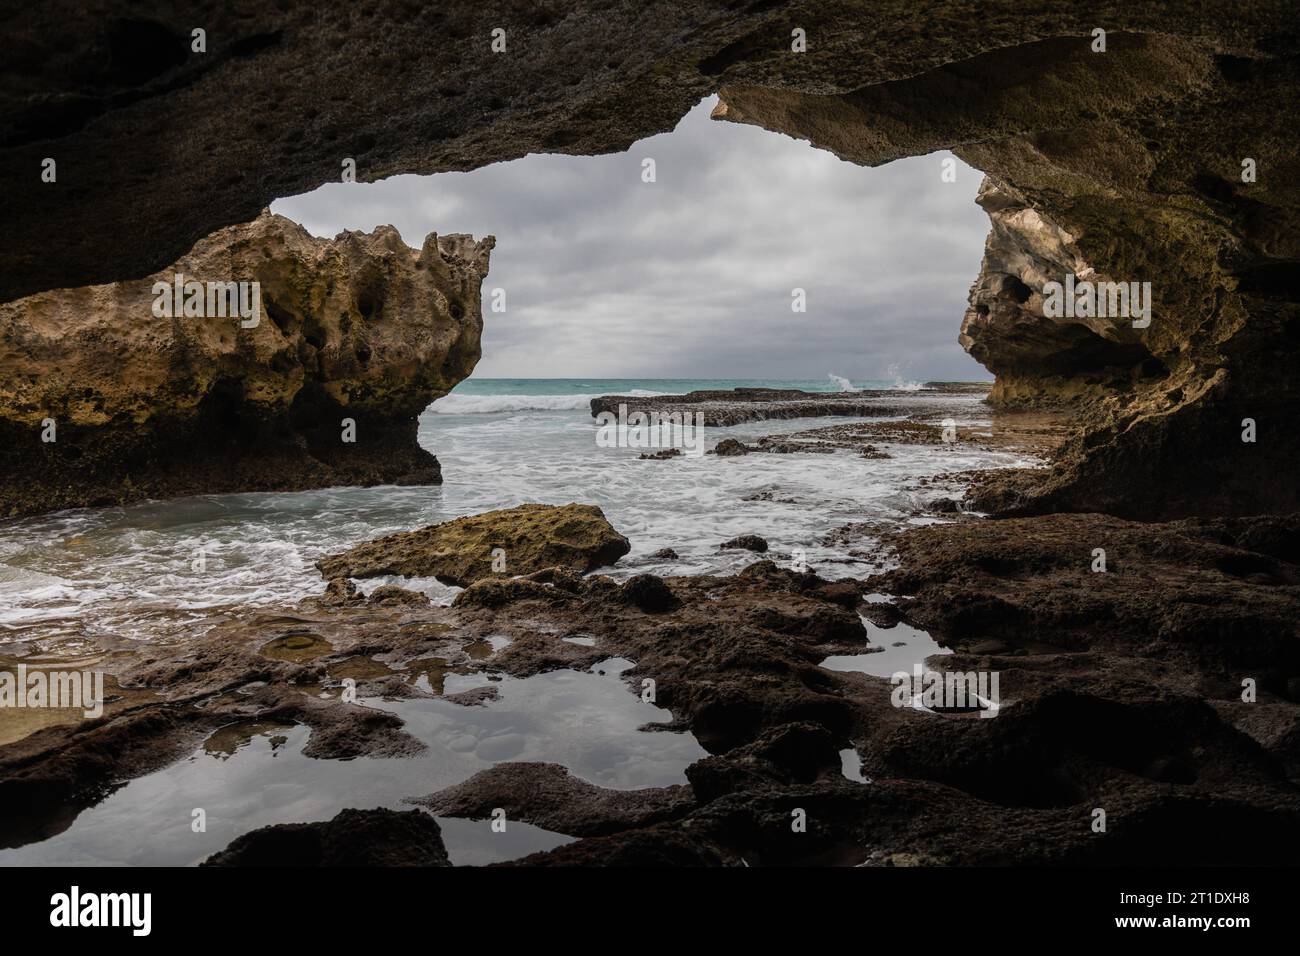 Wenn Sie von der Höhle aus blicken, offenbart sich ein felsiger Felsvorsprung, der vom Meer umgeben ist, während das Innere der Höhle mit einer Reihe von Felsen gefüllt ist Stockfoto